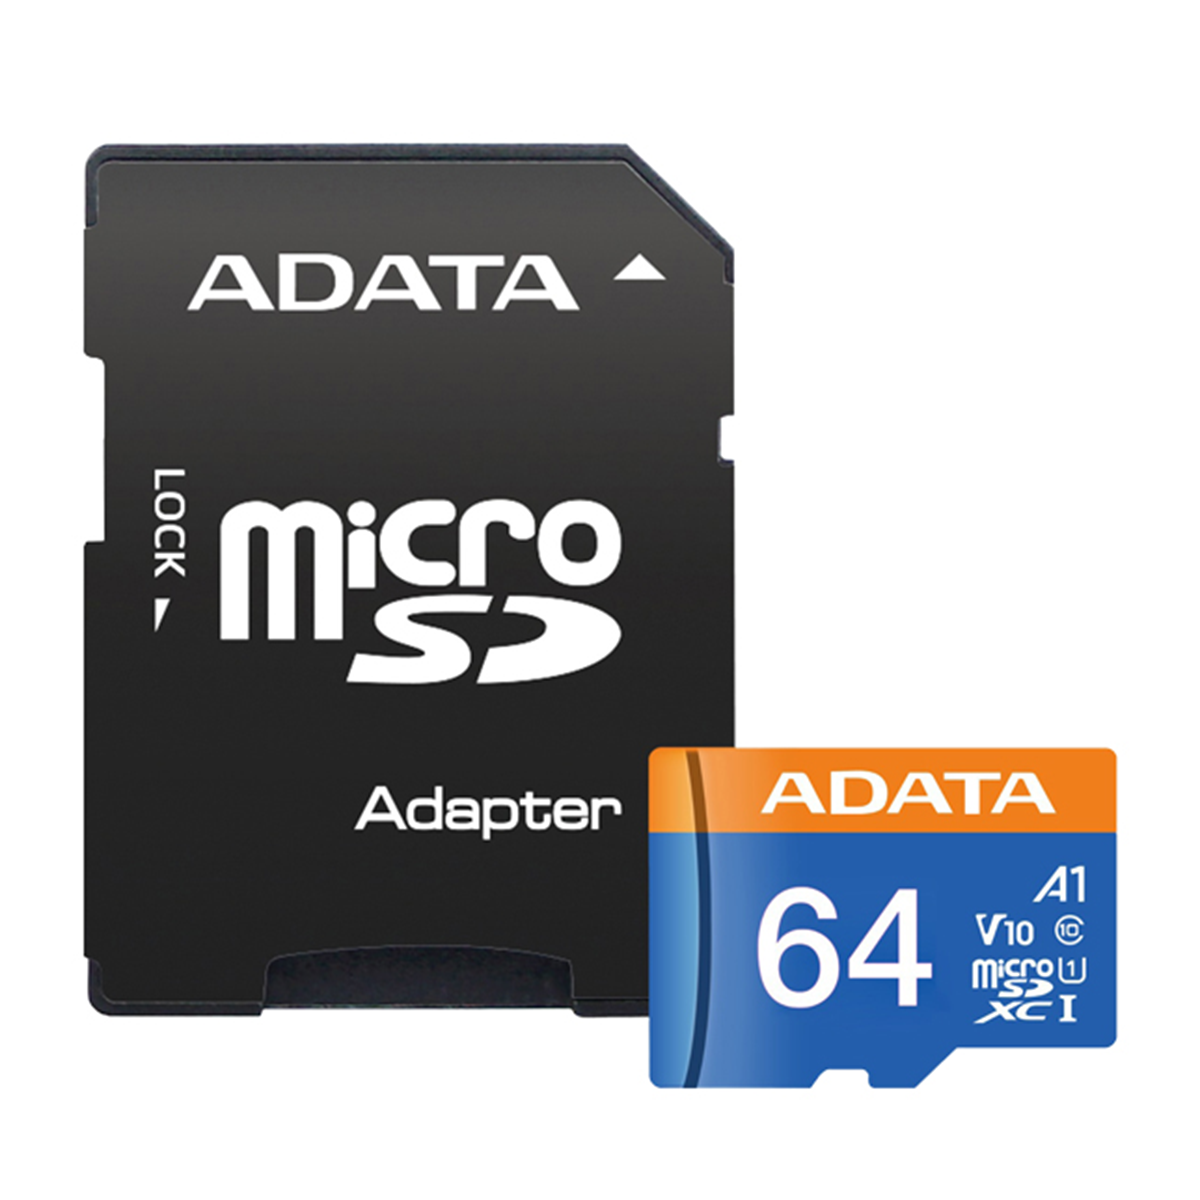 کارت حافظه microSDXC ای دیتا مدل Premier V10 A1 کلاس 10 استاندارد UHS-I سرعت 100MBps ظرفیت 64 گیگابایت به همراه آداپتور